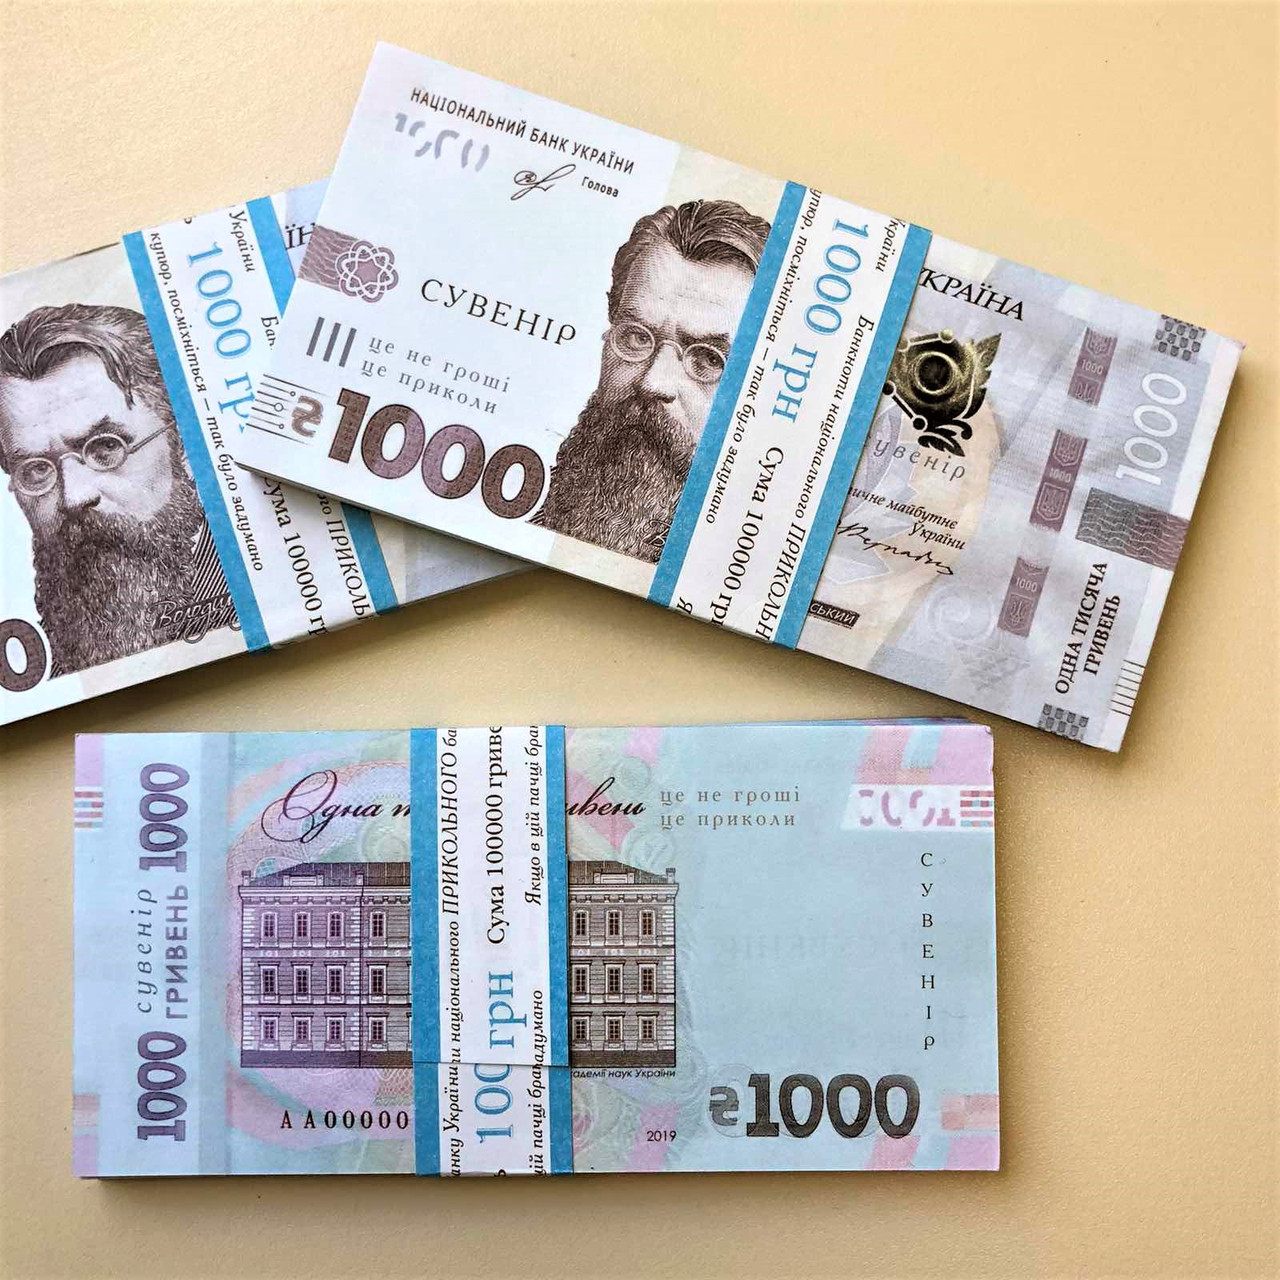 Всем по 1000 гривен за зеленый сертификат! Новое распоряжение президента вступит в силу 19 декабря